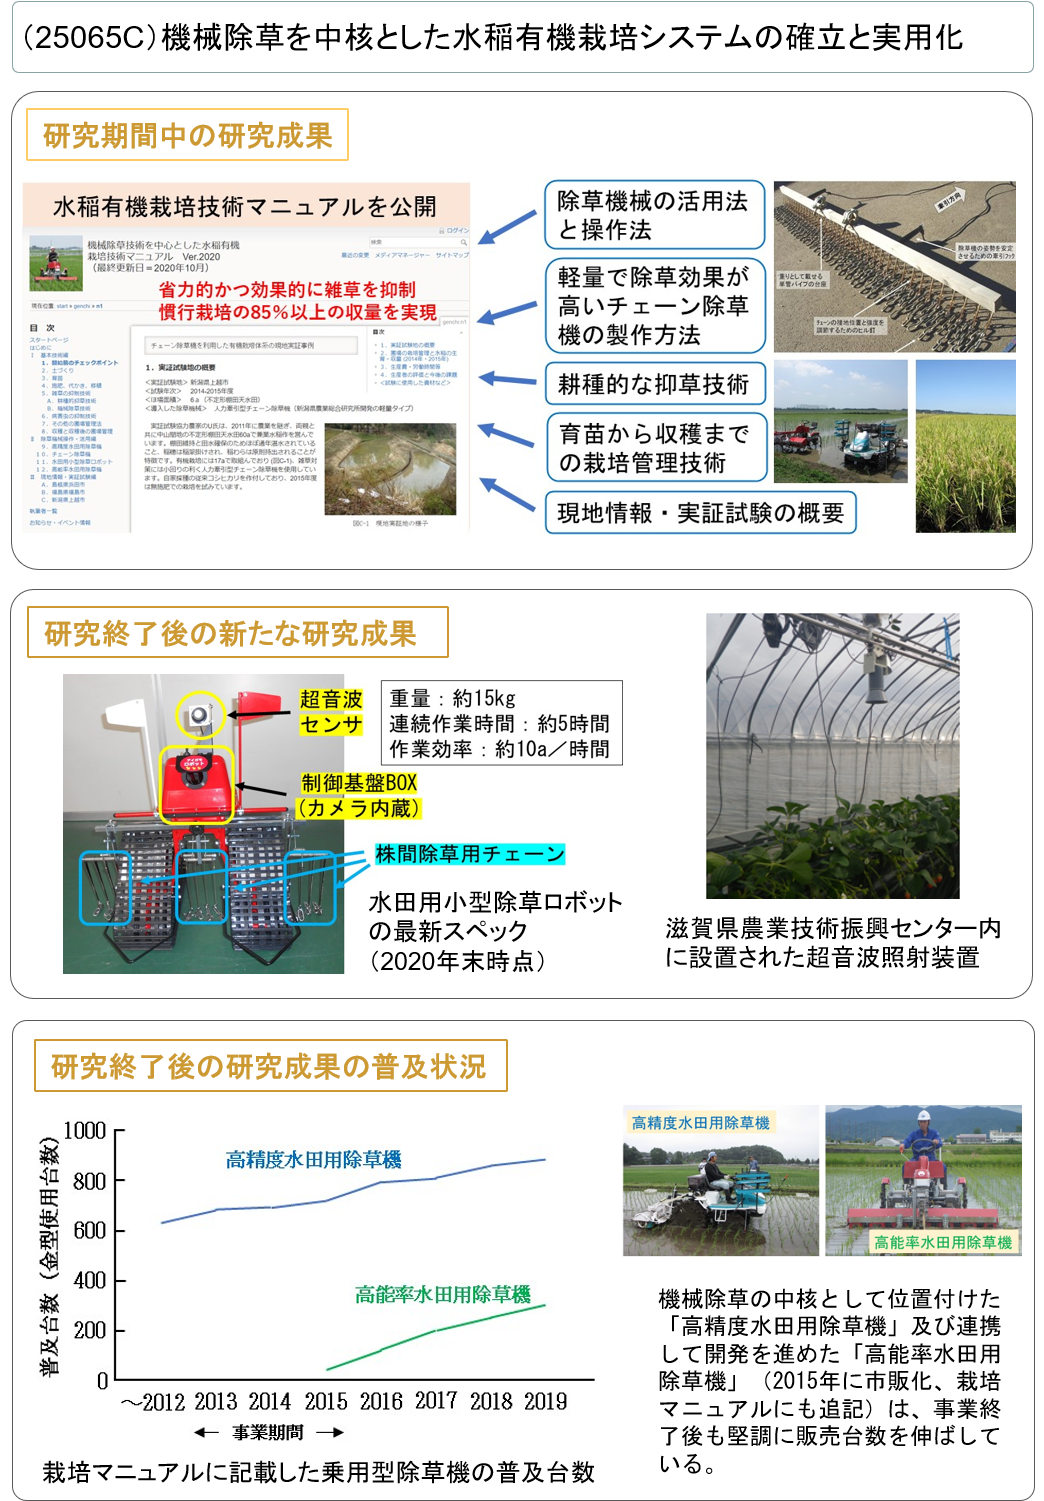 (25065C) 機械除草を中核とした水稲有機栽培システムの確立と実用化